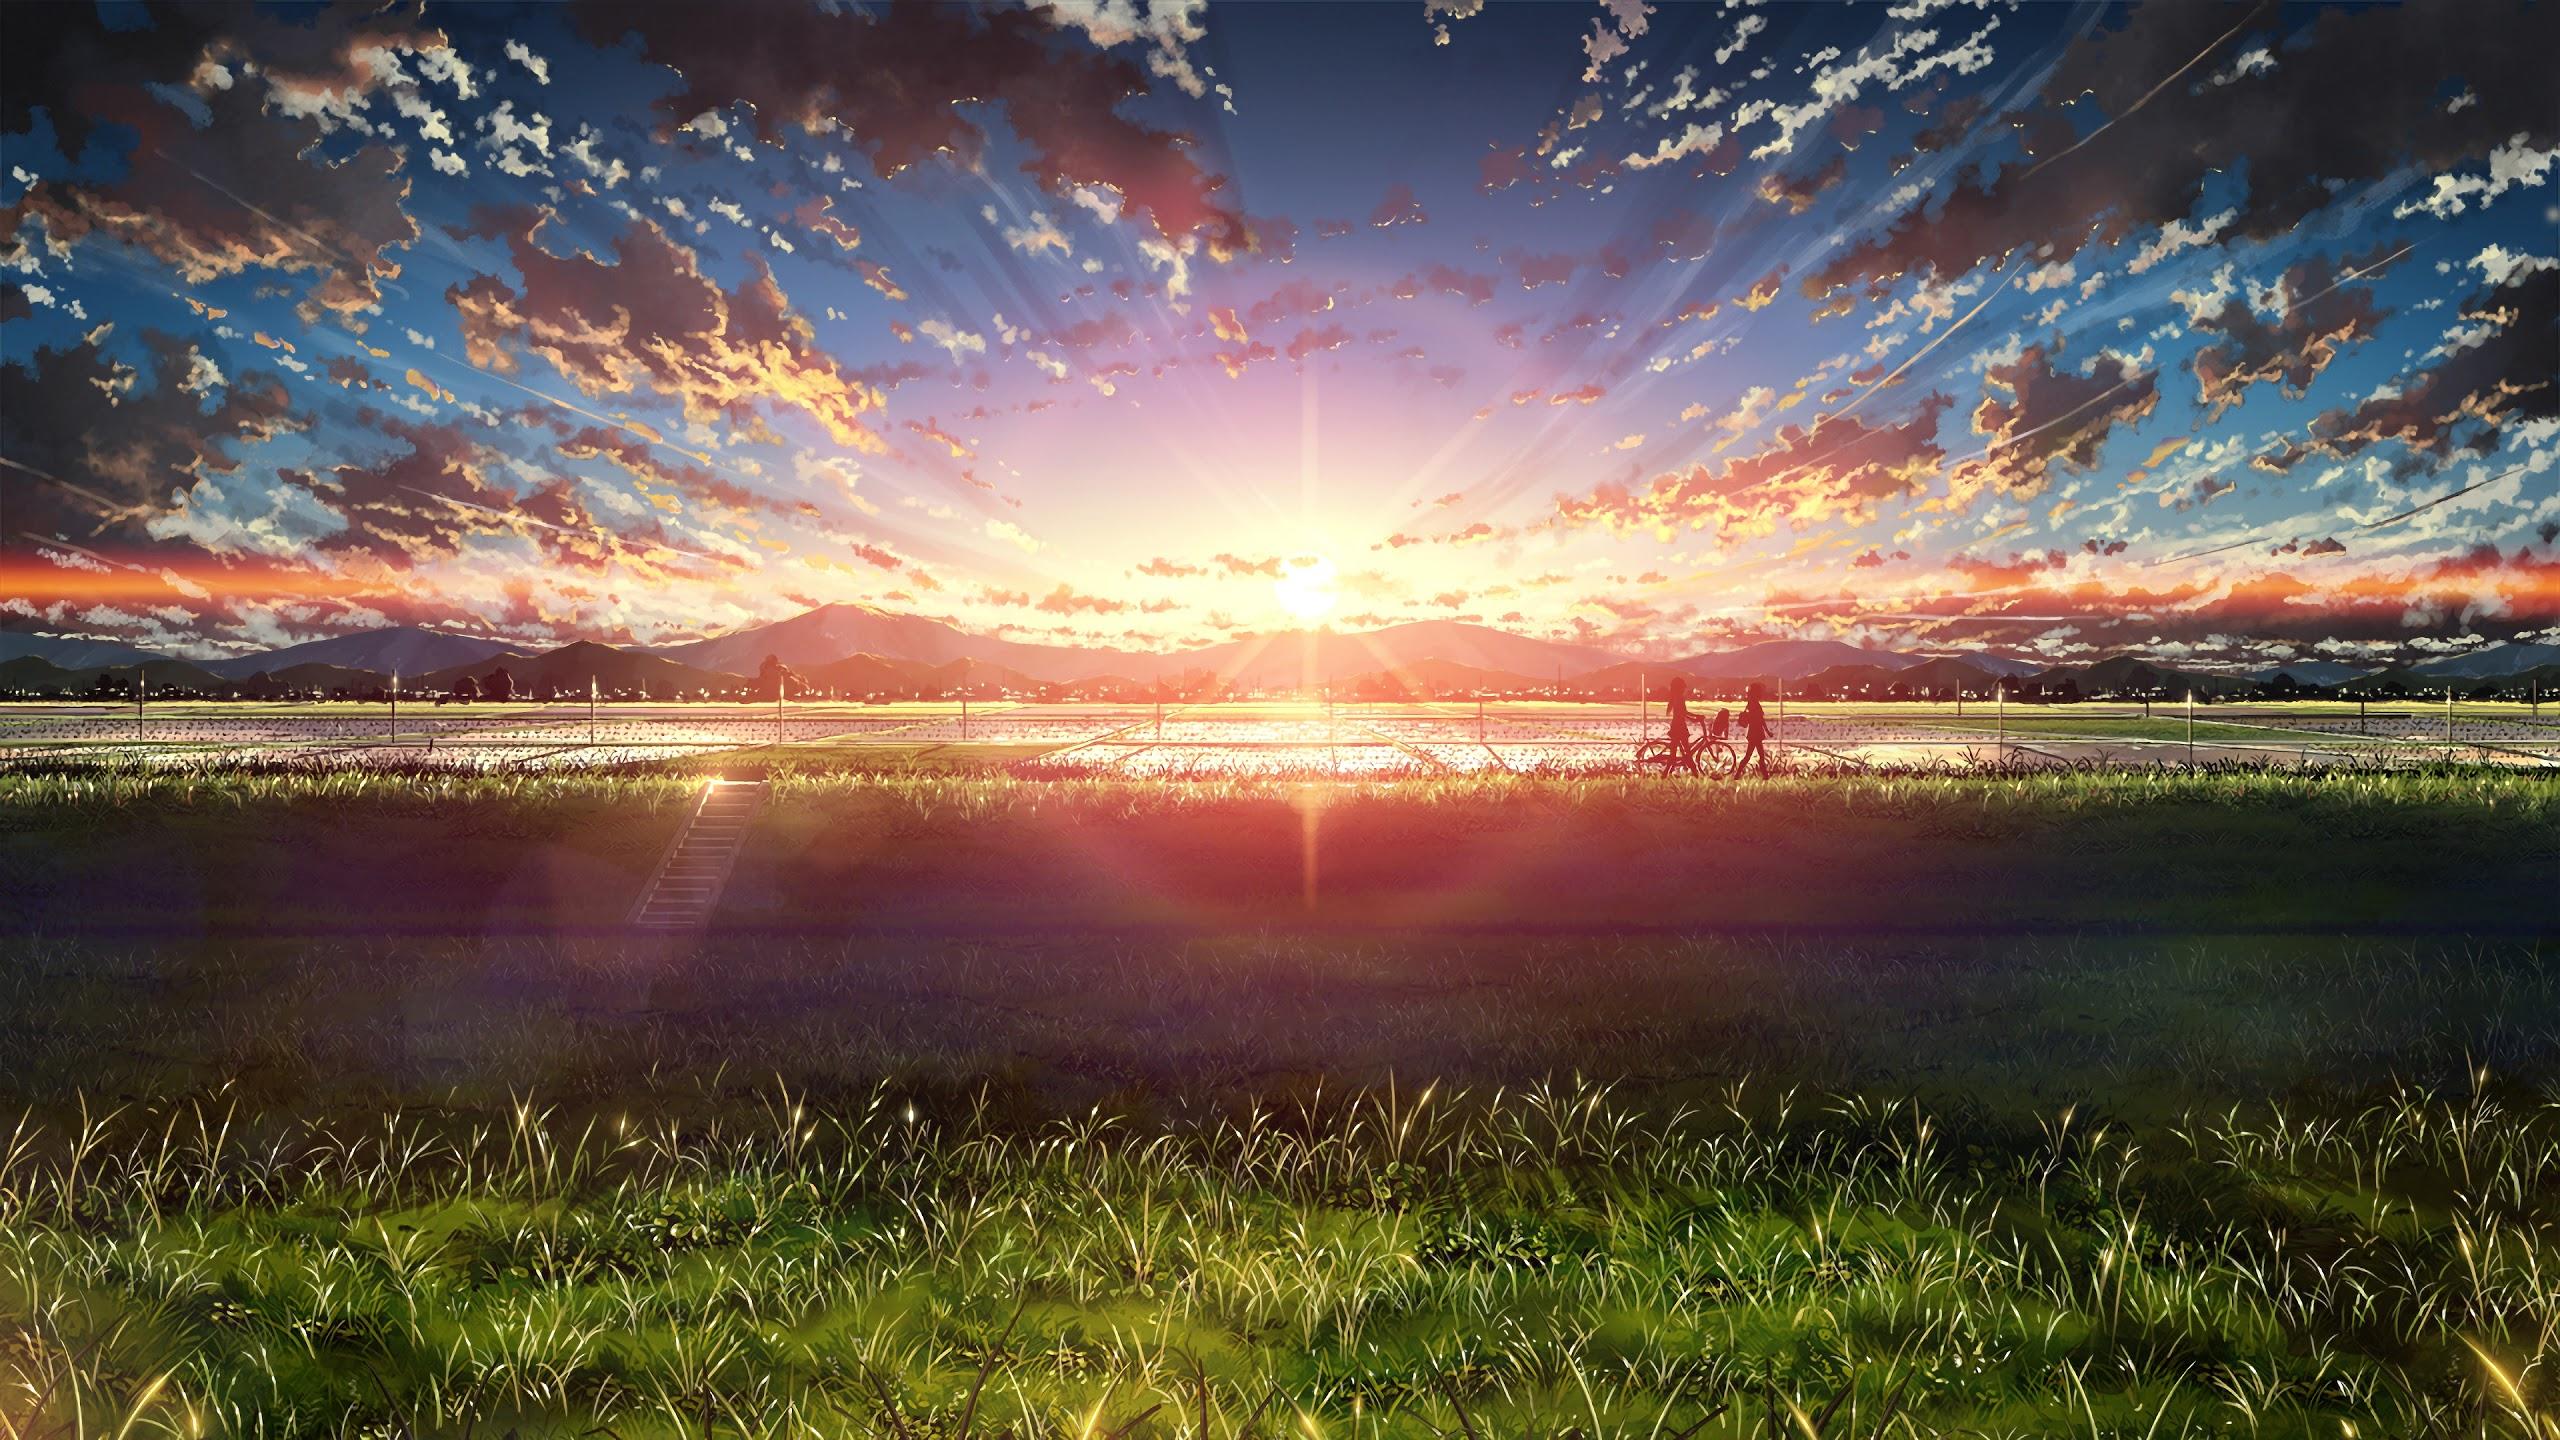 Anime Beautiful Sunrise Landscape Sky Clouds Scenery 4K